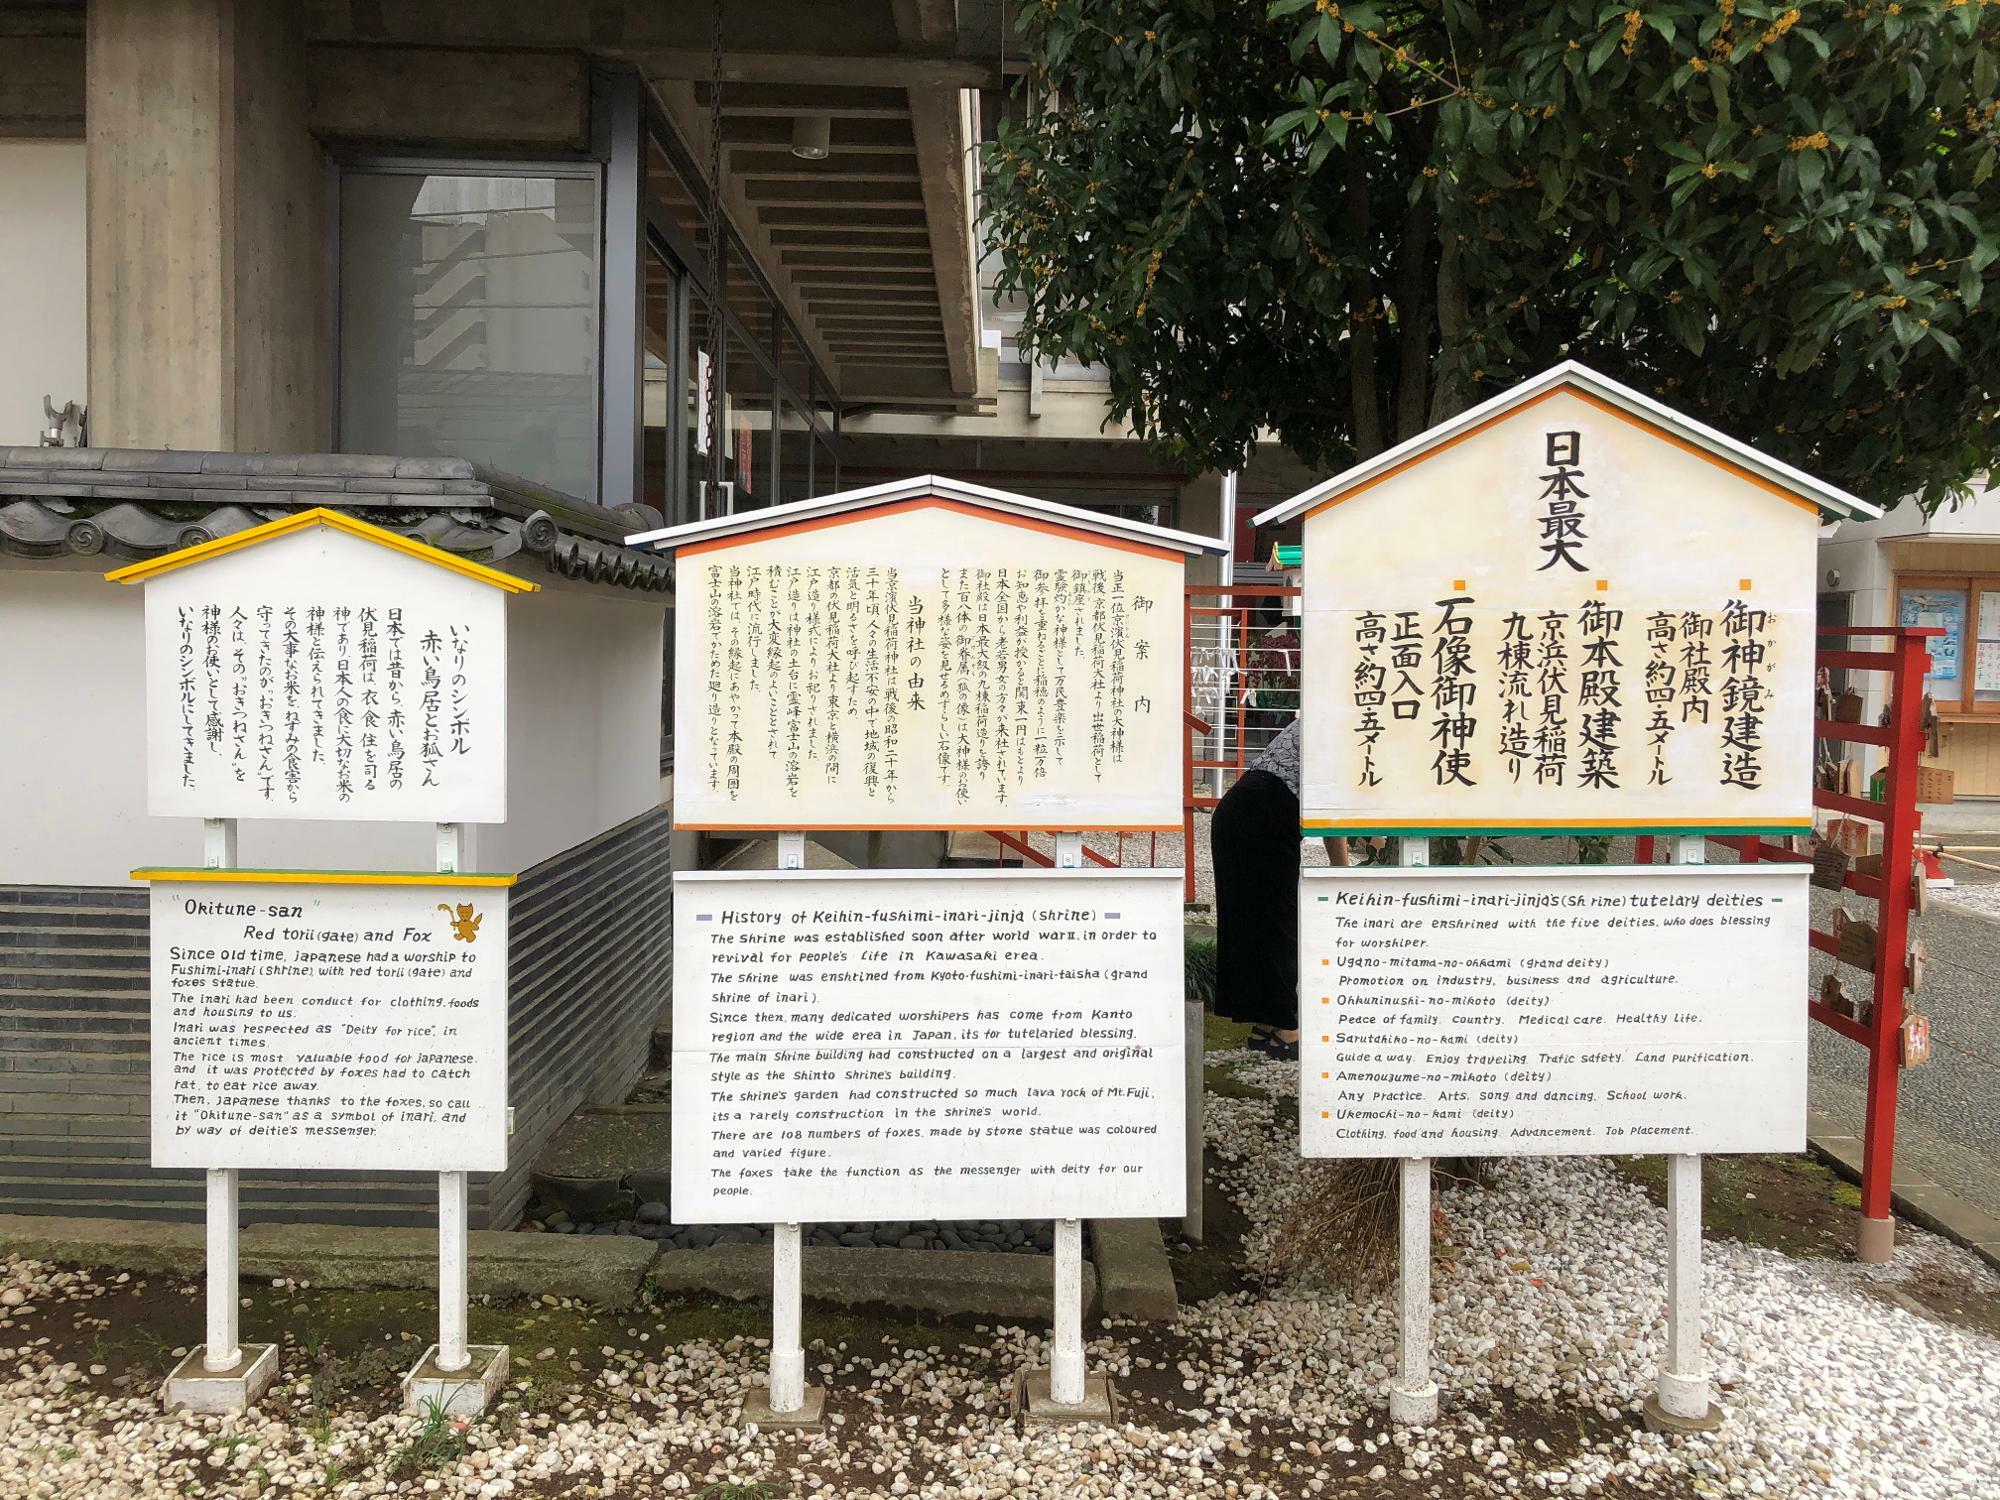 日本最大の御神鏡が社殿の中にあると書かれていました